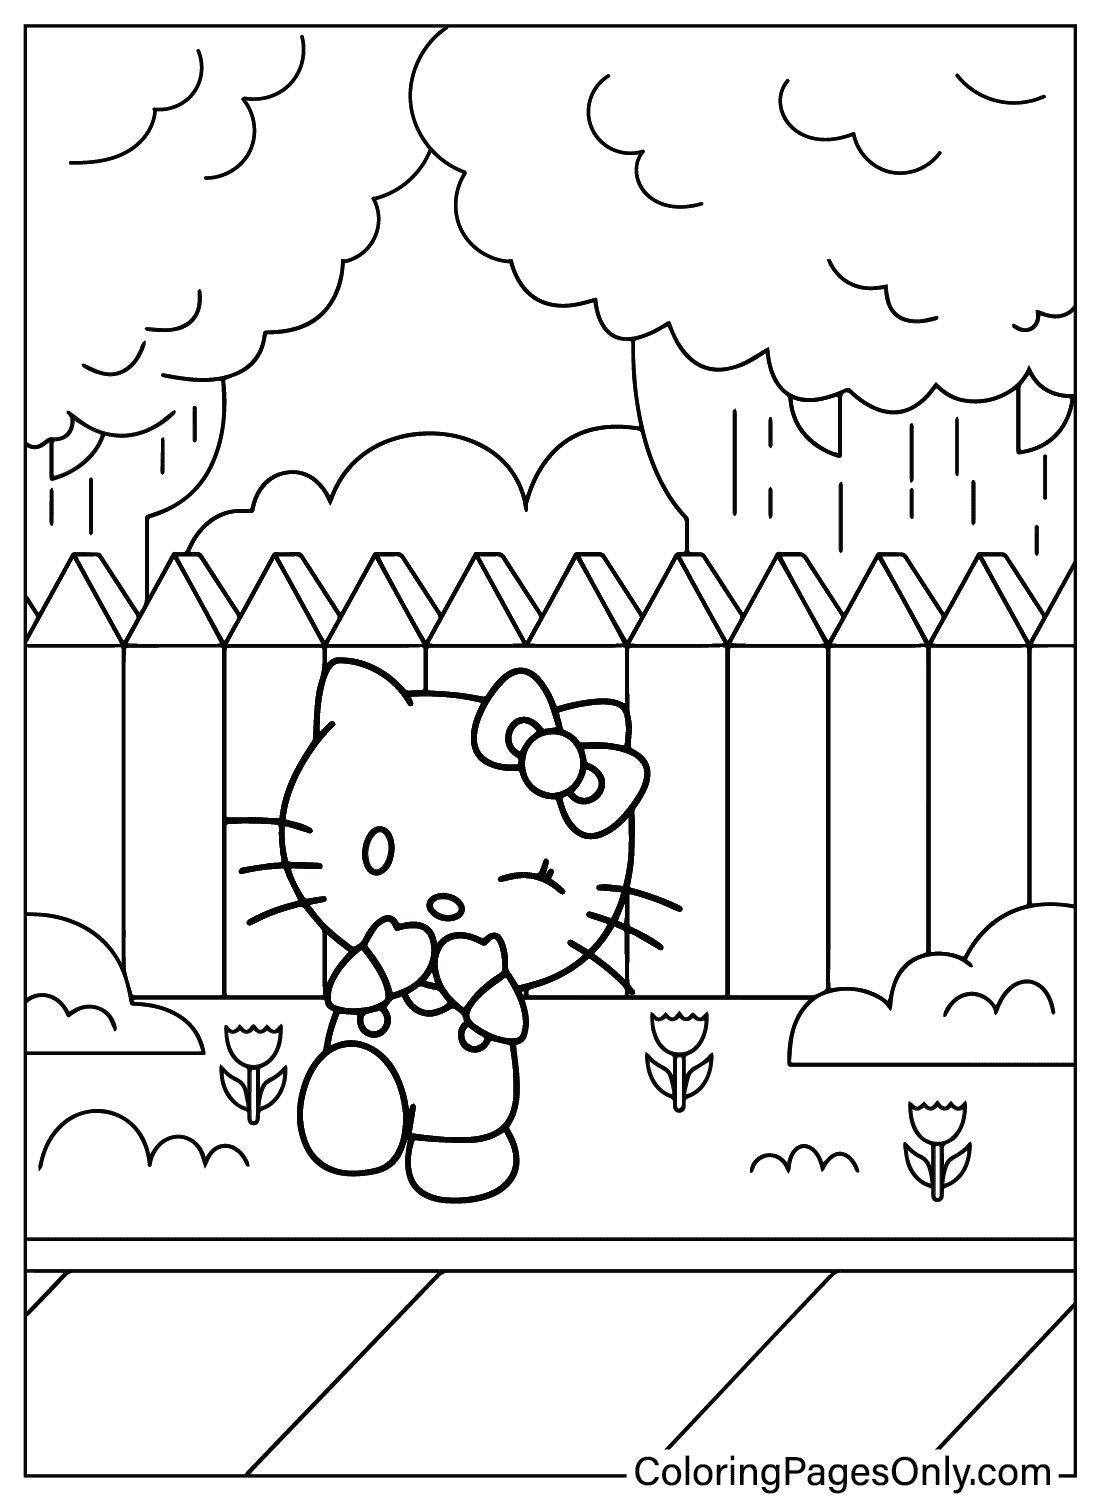 Página para colorir da Hello Kitty para impressão da Hello Kitty